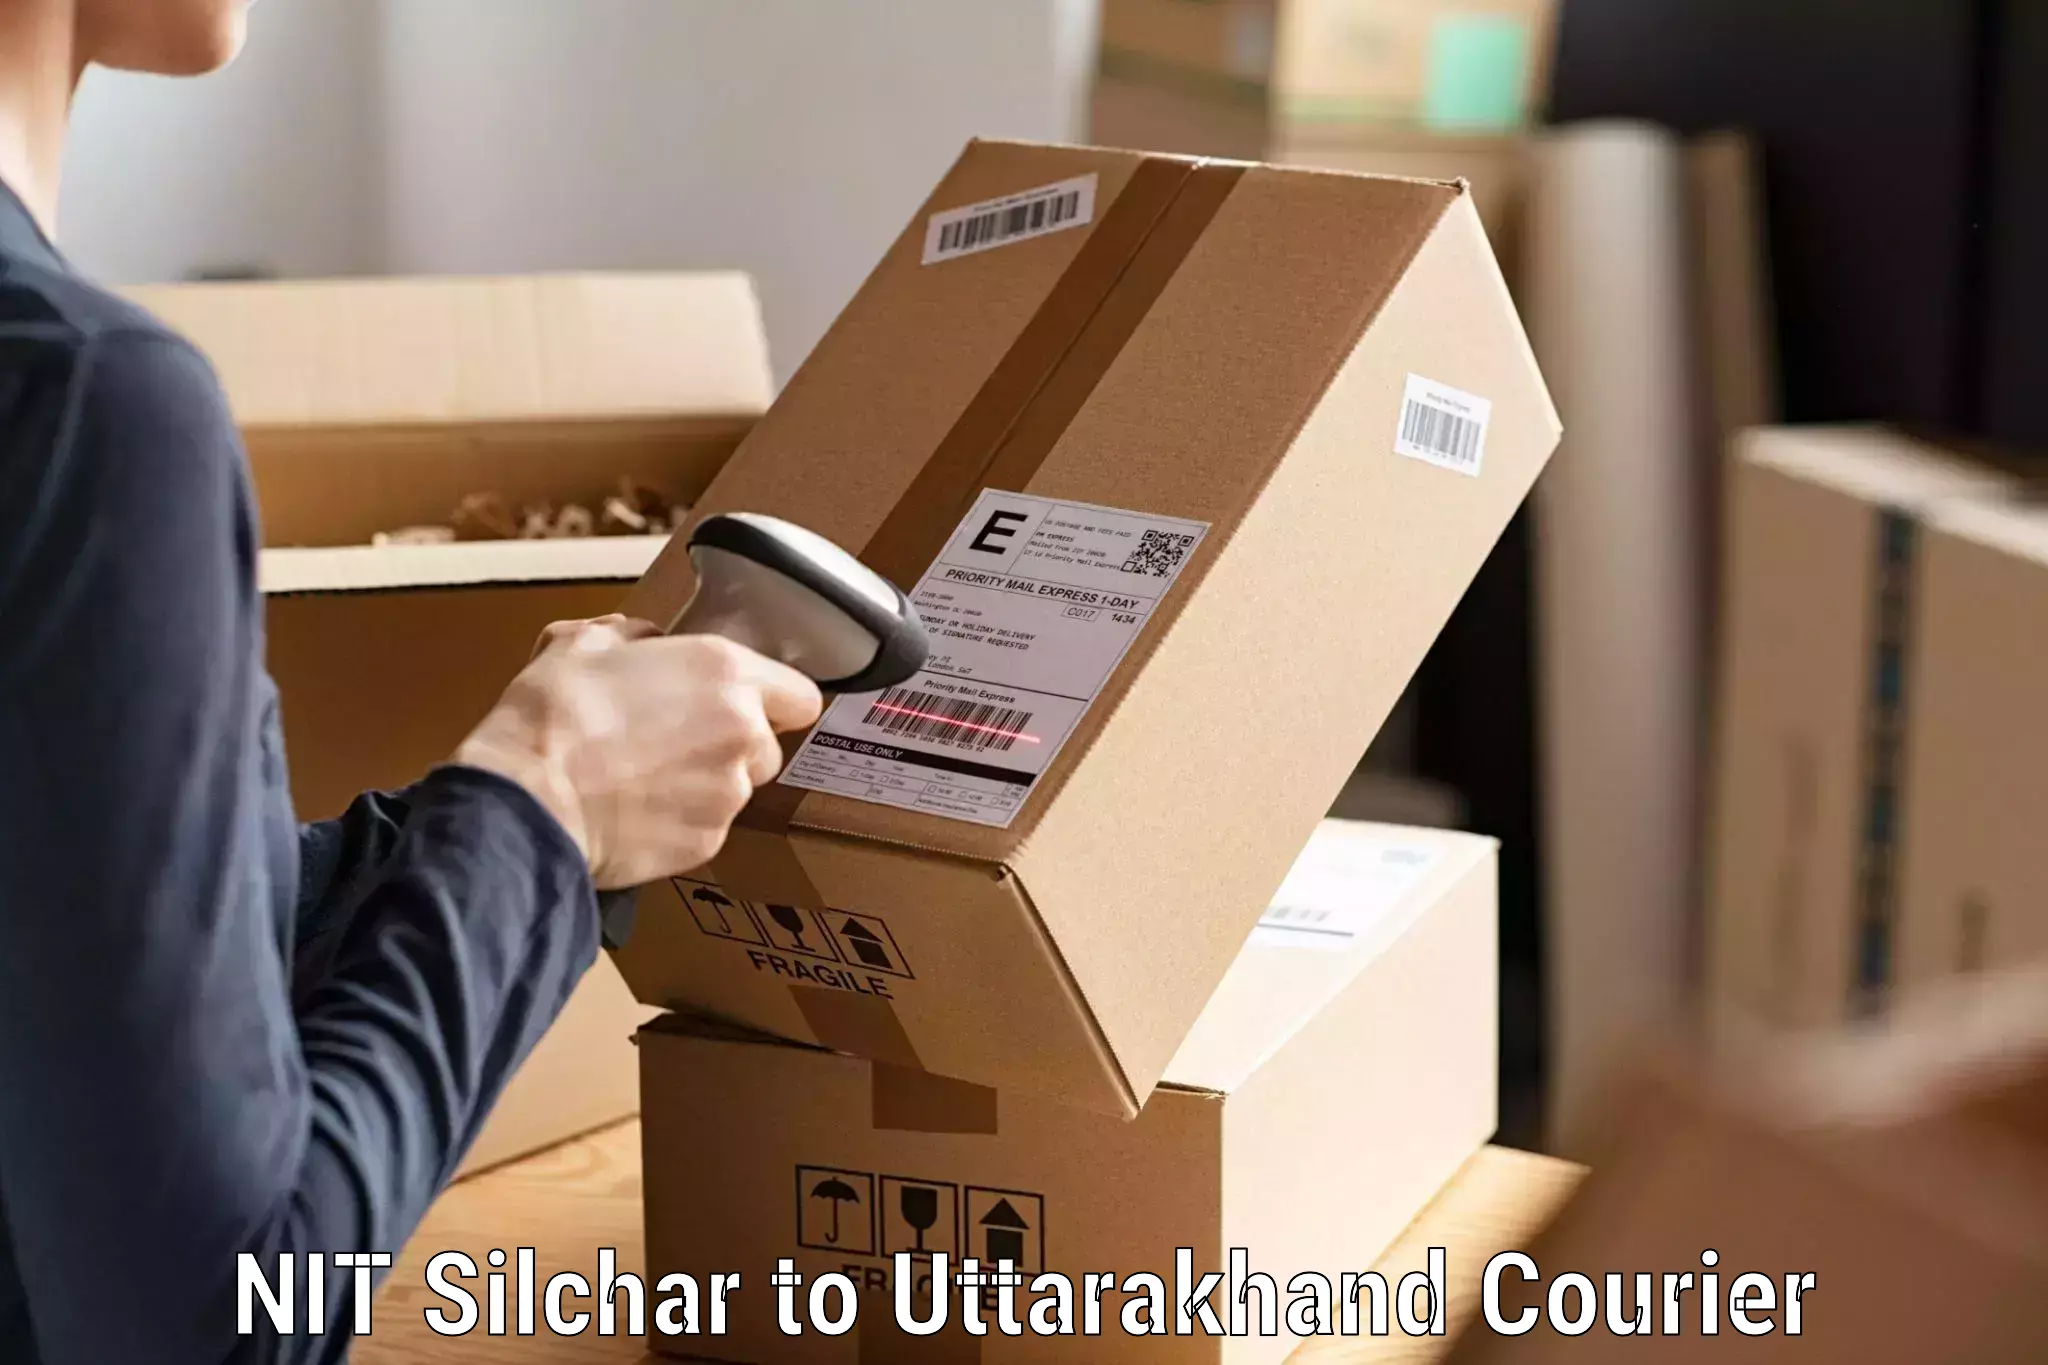 Reliable parcel services NIT Silchar to Dehradun